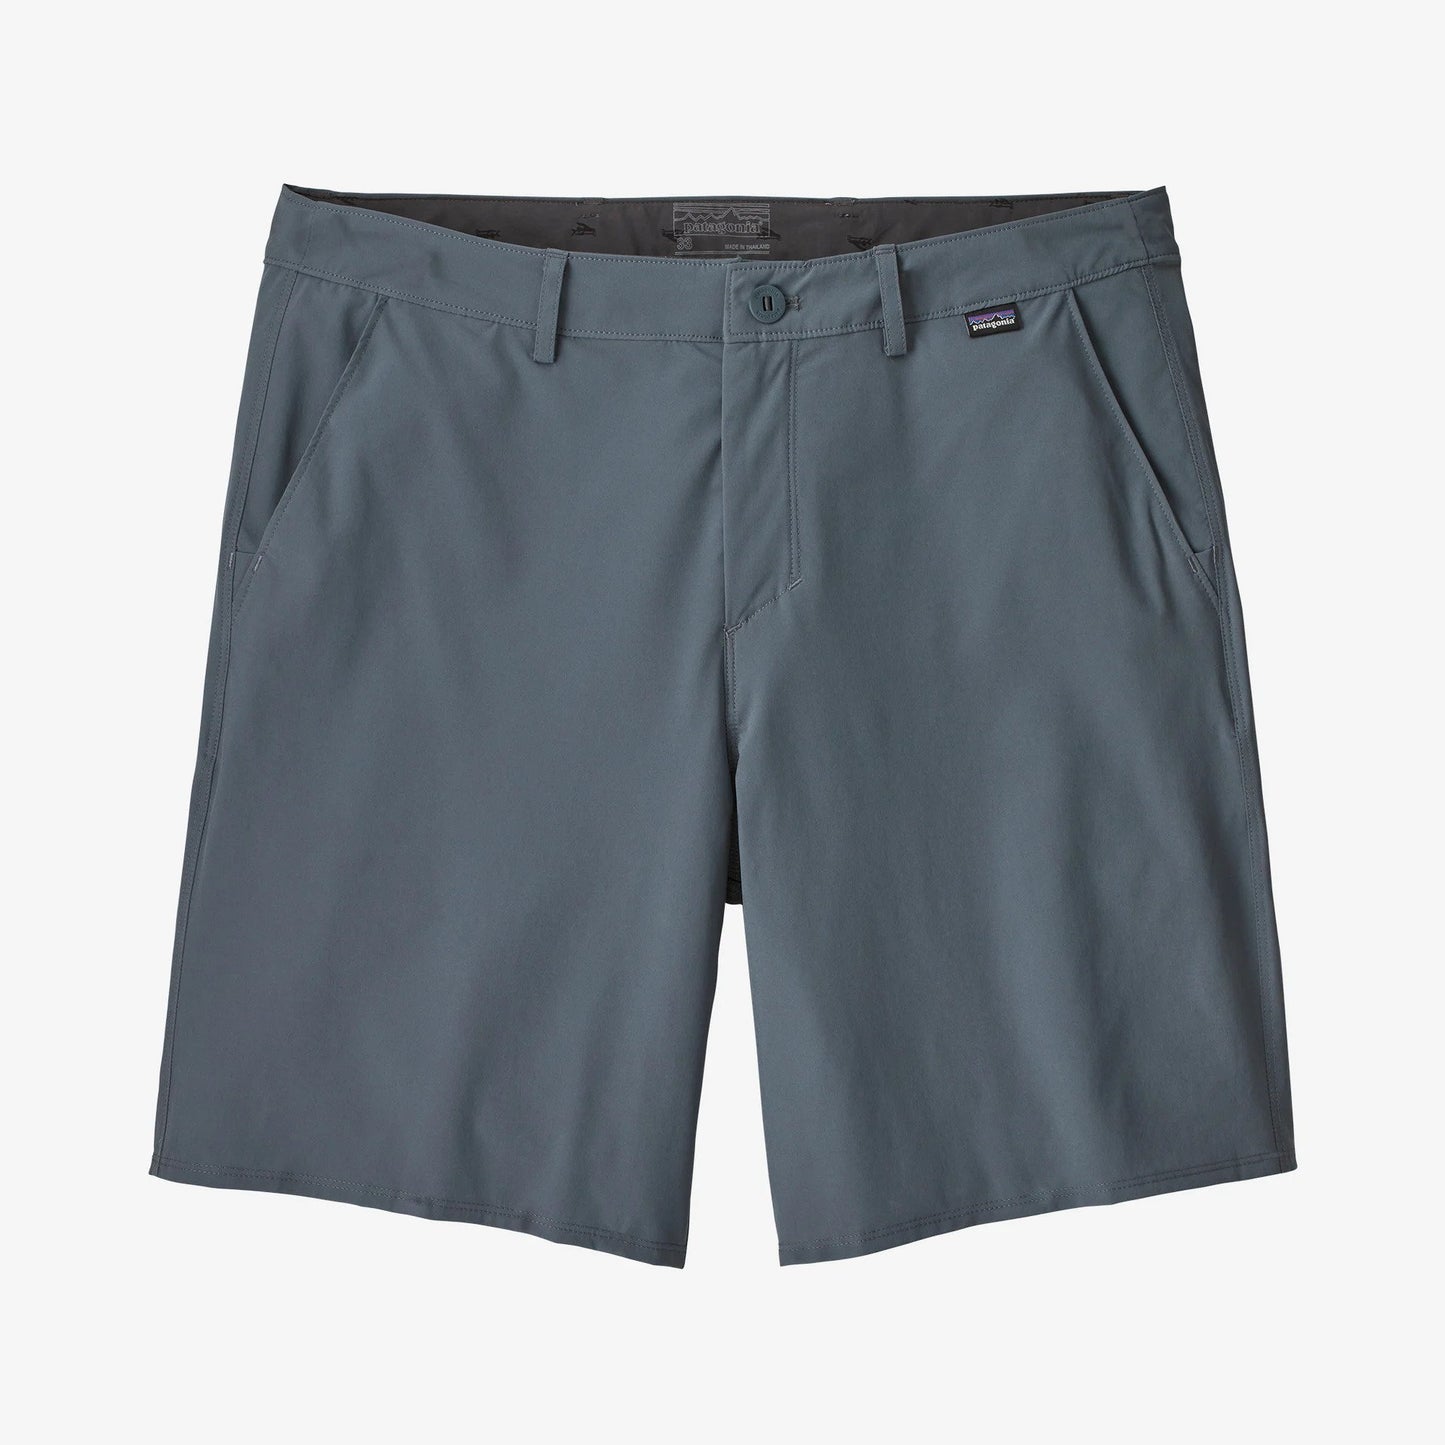 Men's Hydropeak Hybrid Walk Shorts - 19" - PLGY